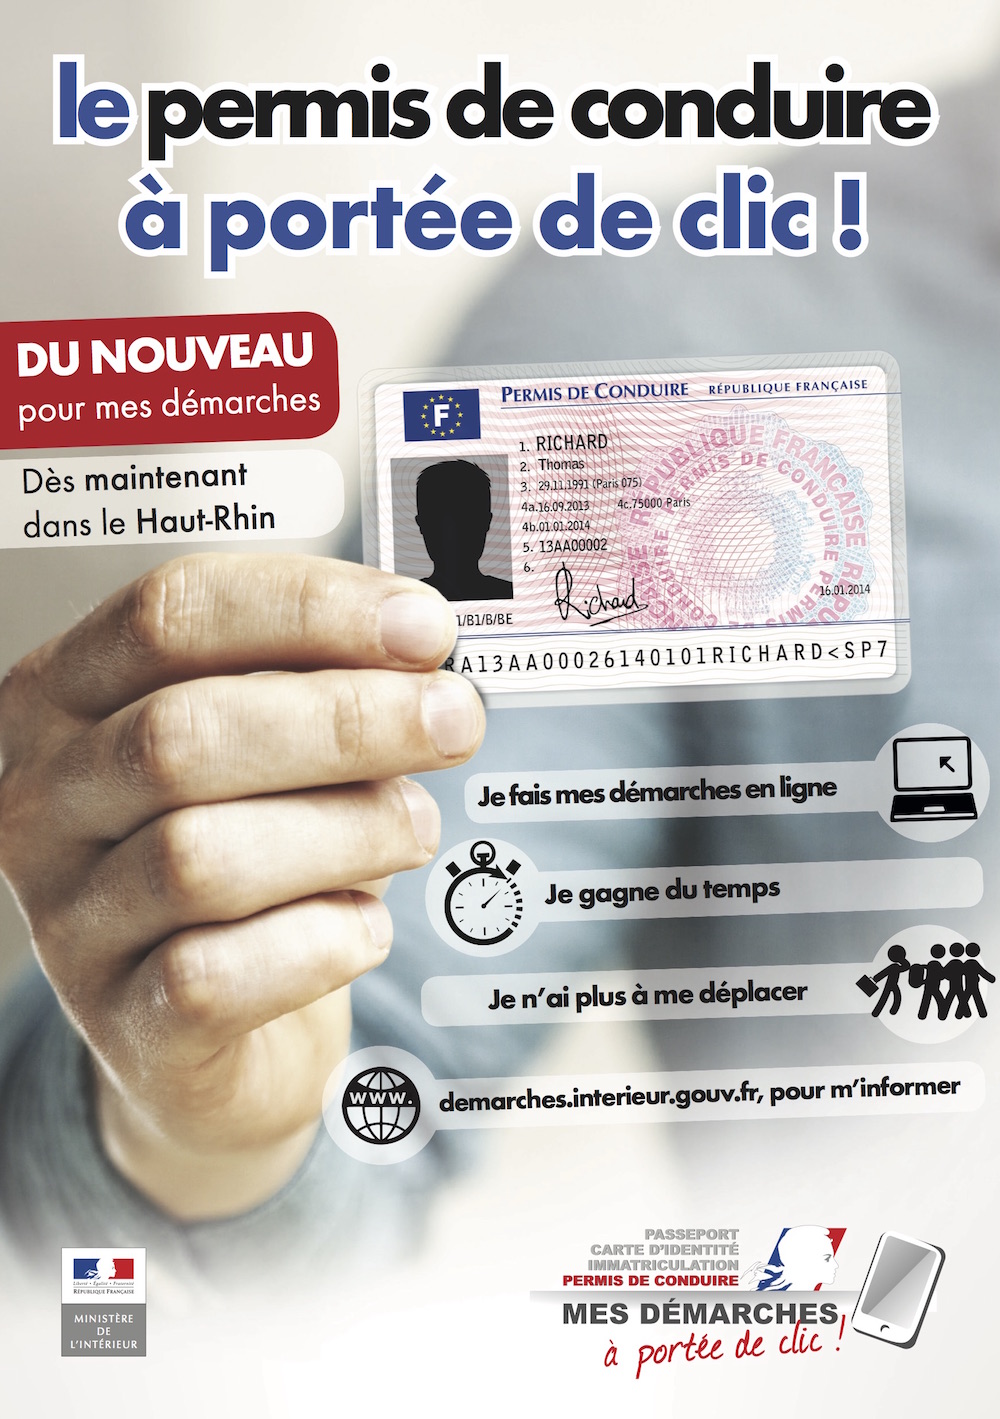 Flyer le permis de conduire a porté de clic